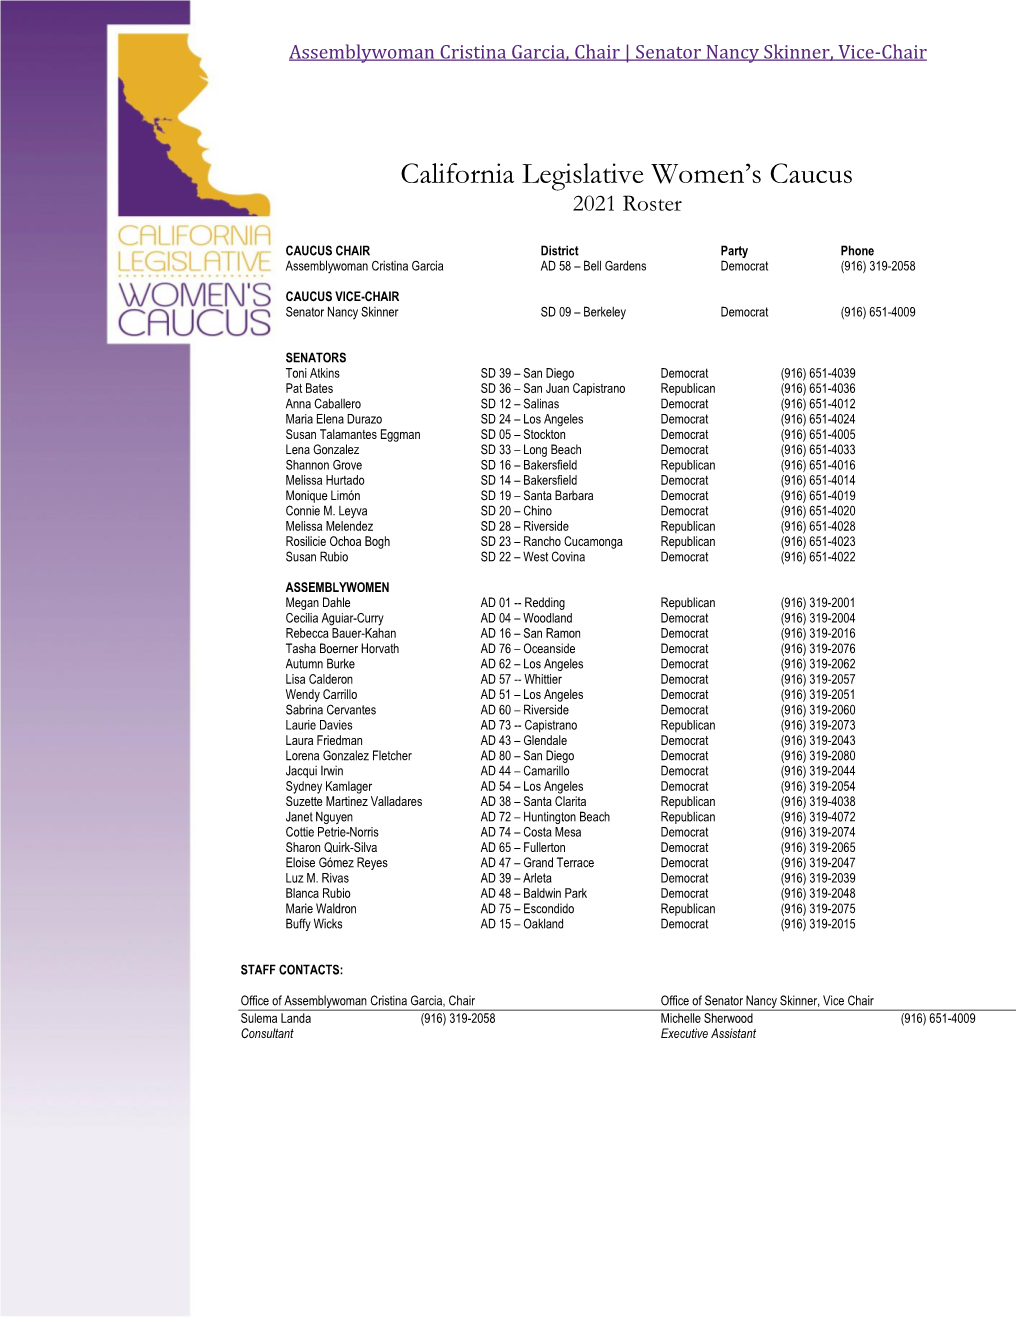 California Legislative Women's Caucus